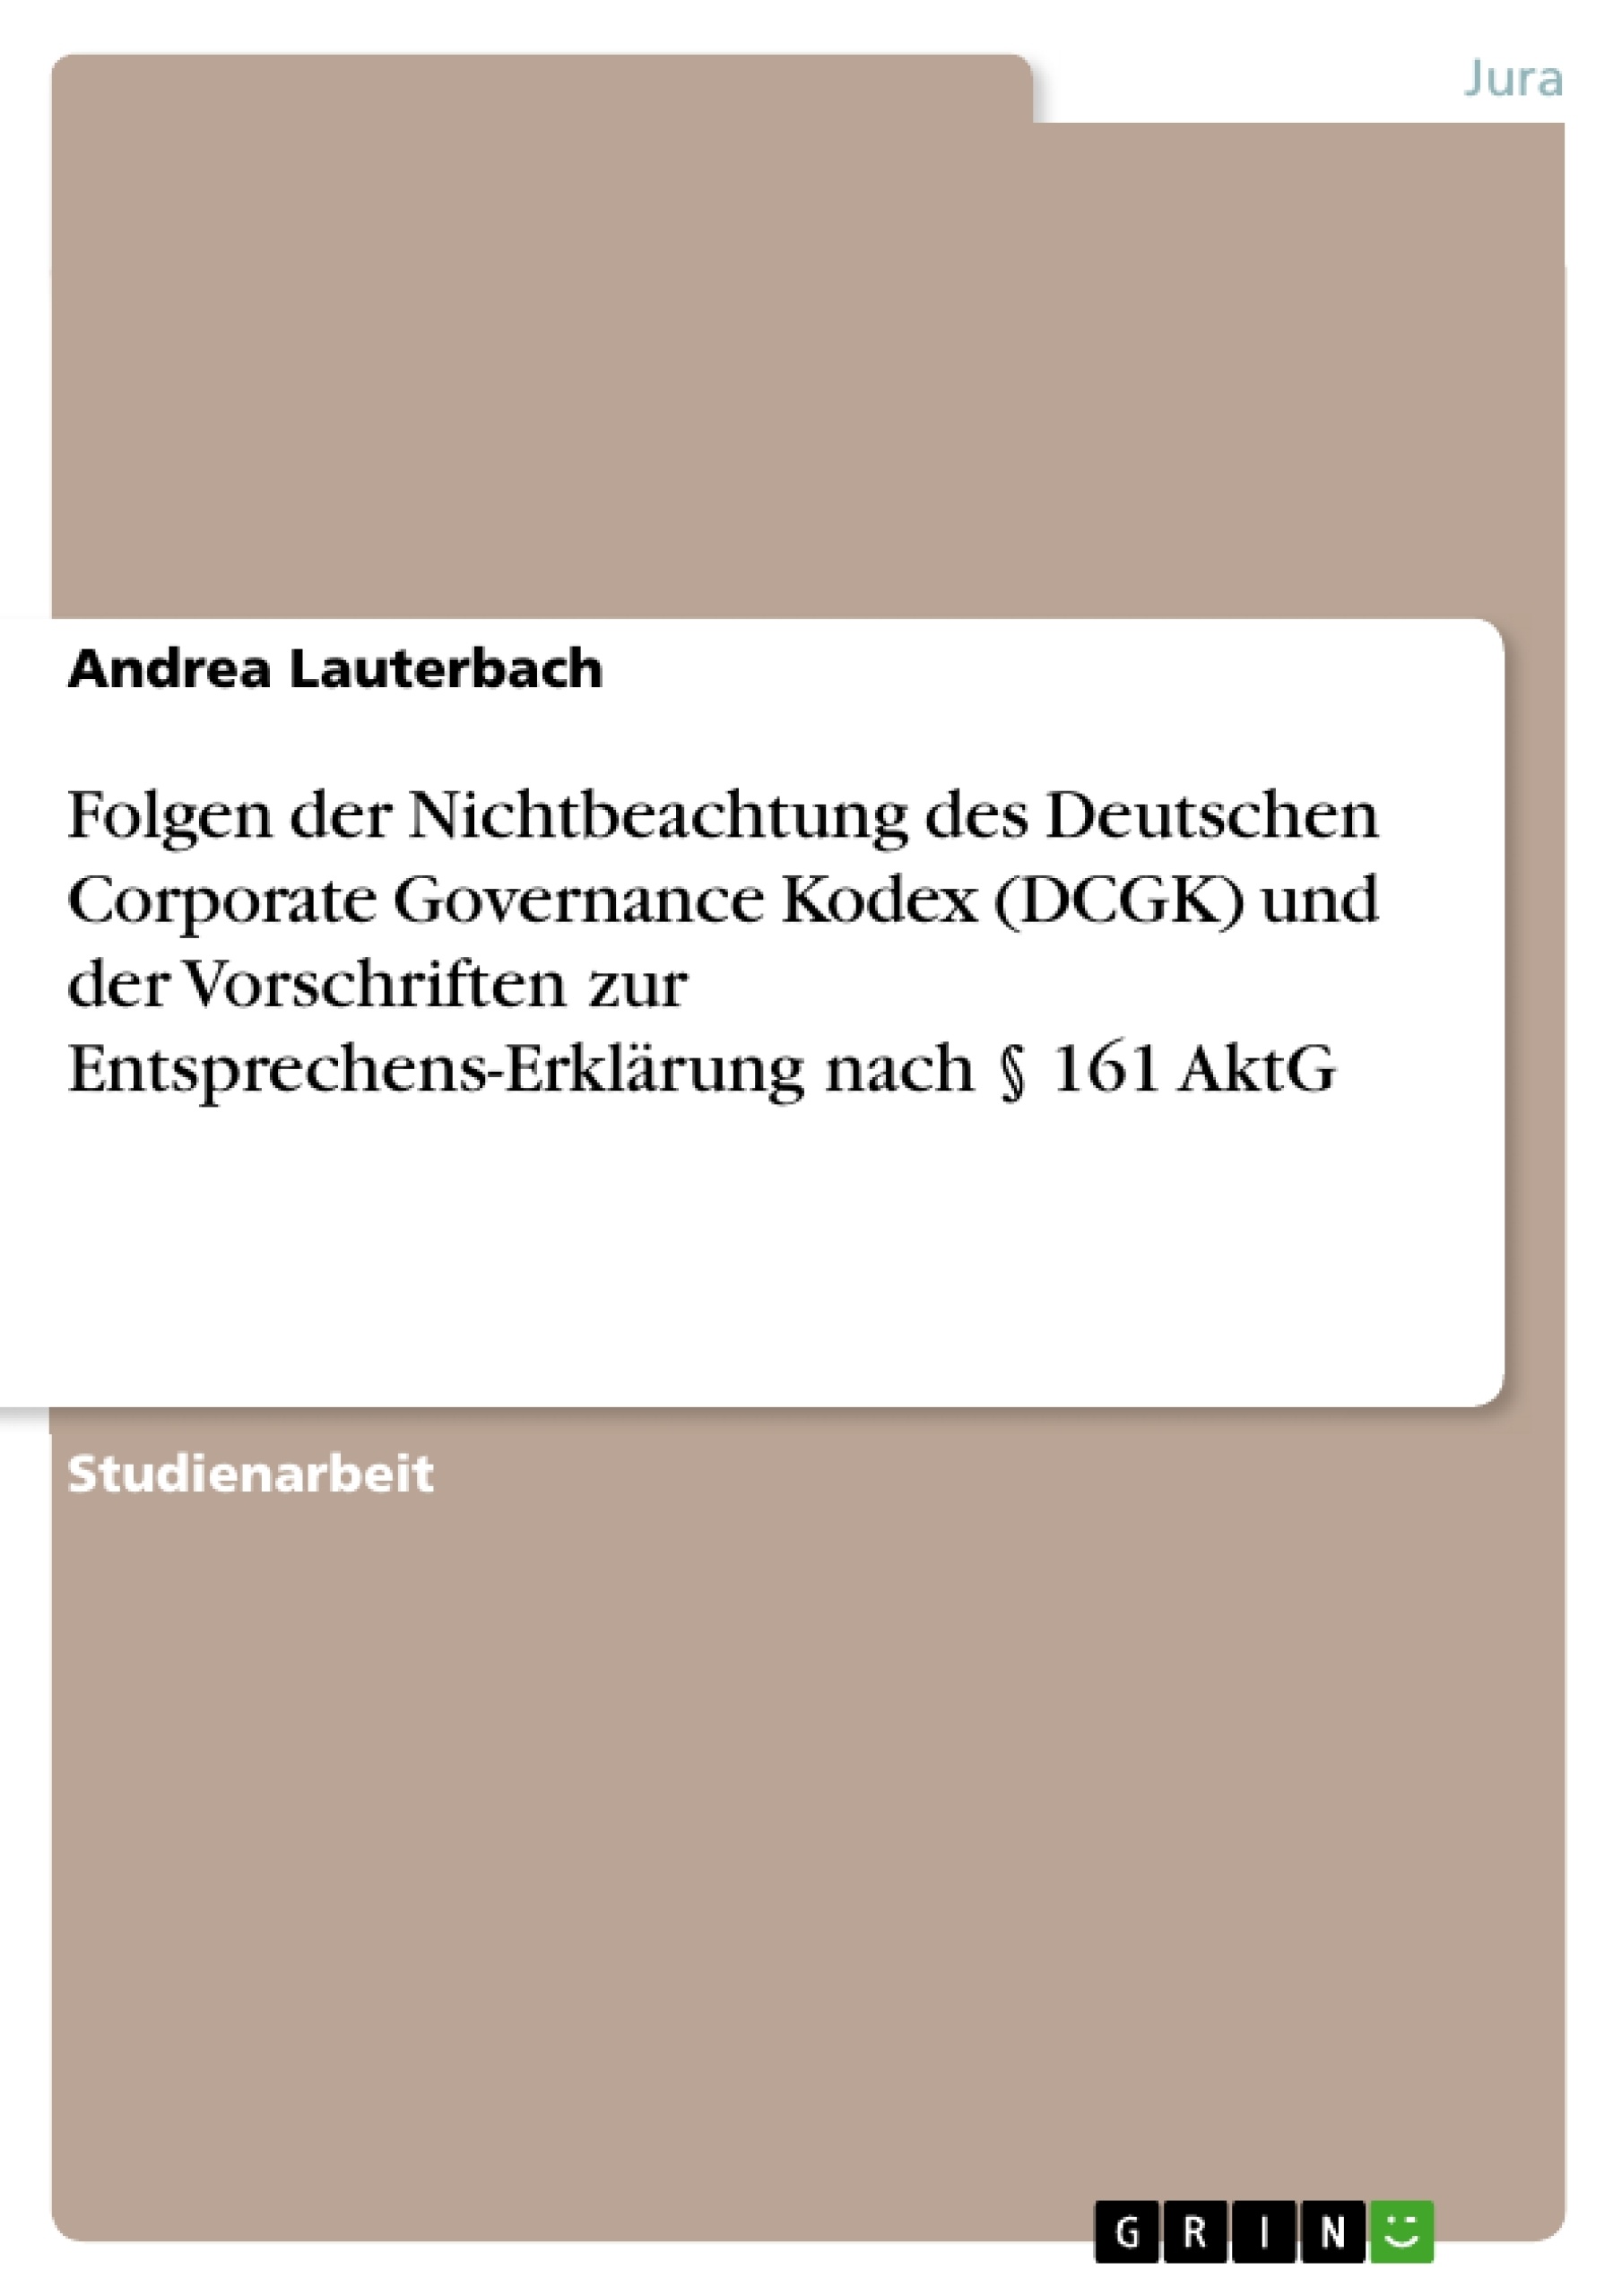 Titel: Folgen der Nichtbeachtung des Deutschen Corporate Governance Kodex (DCGK) und der Vorschriften zur Entsprechens-Erklärung nach § 161 AktG